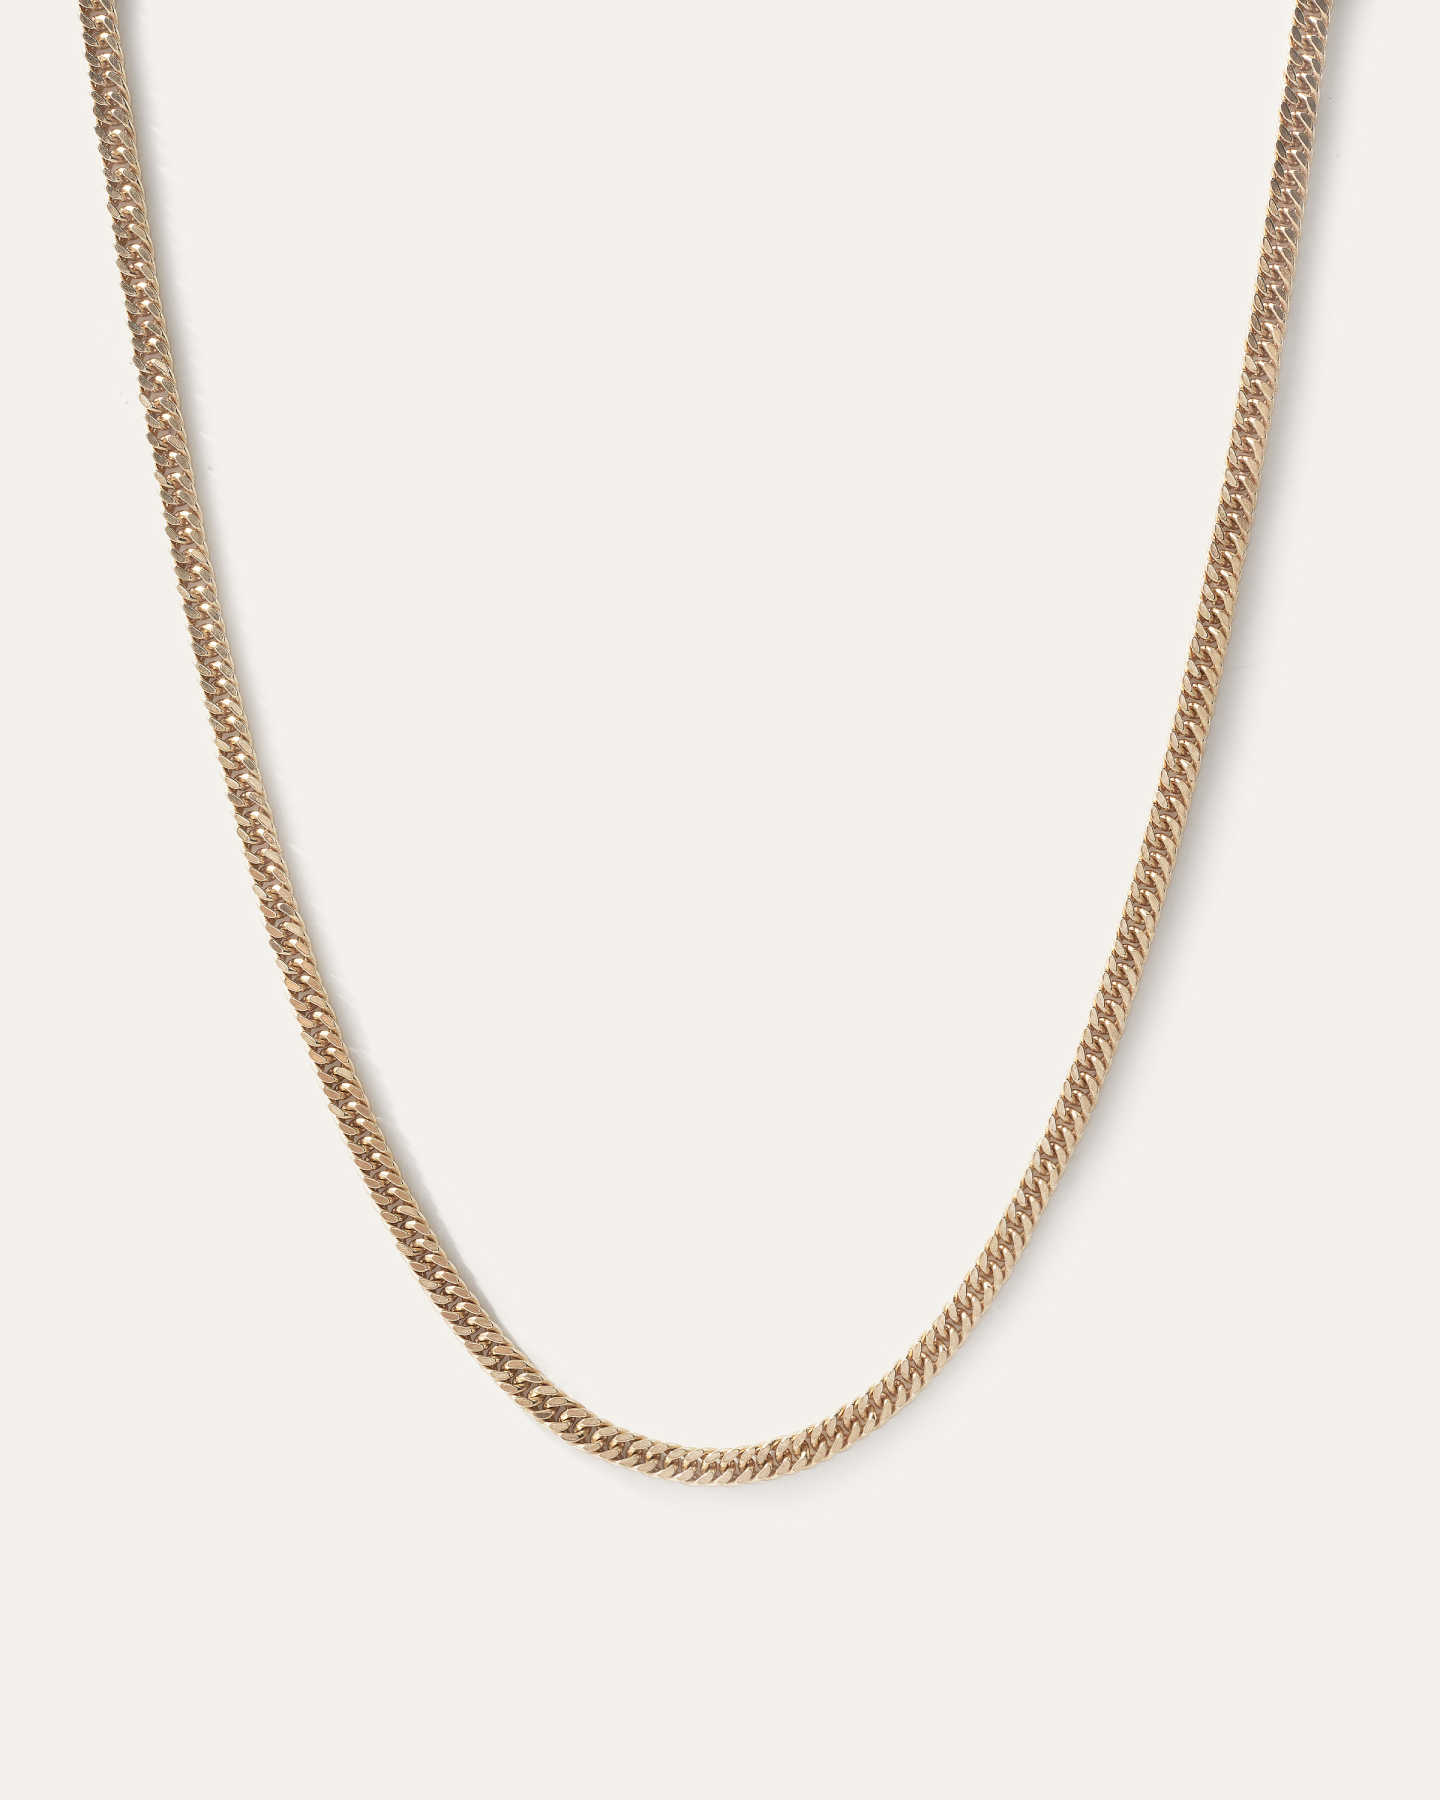 Double Curb Chain Necklace - Gold Vermeil